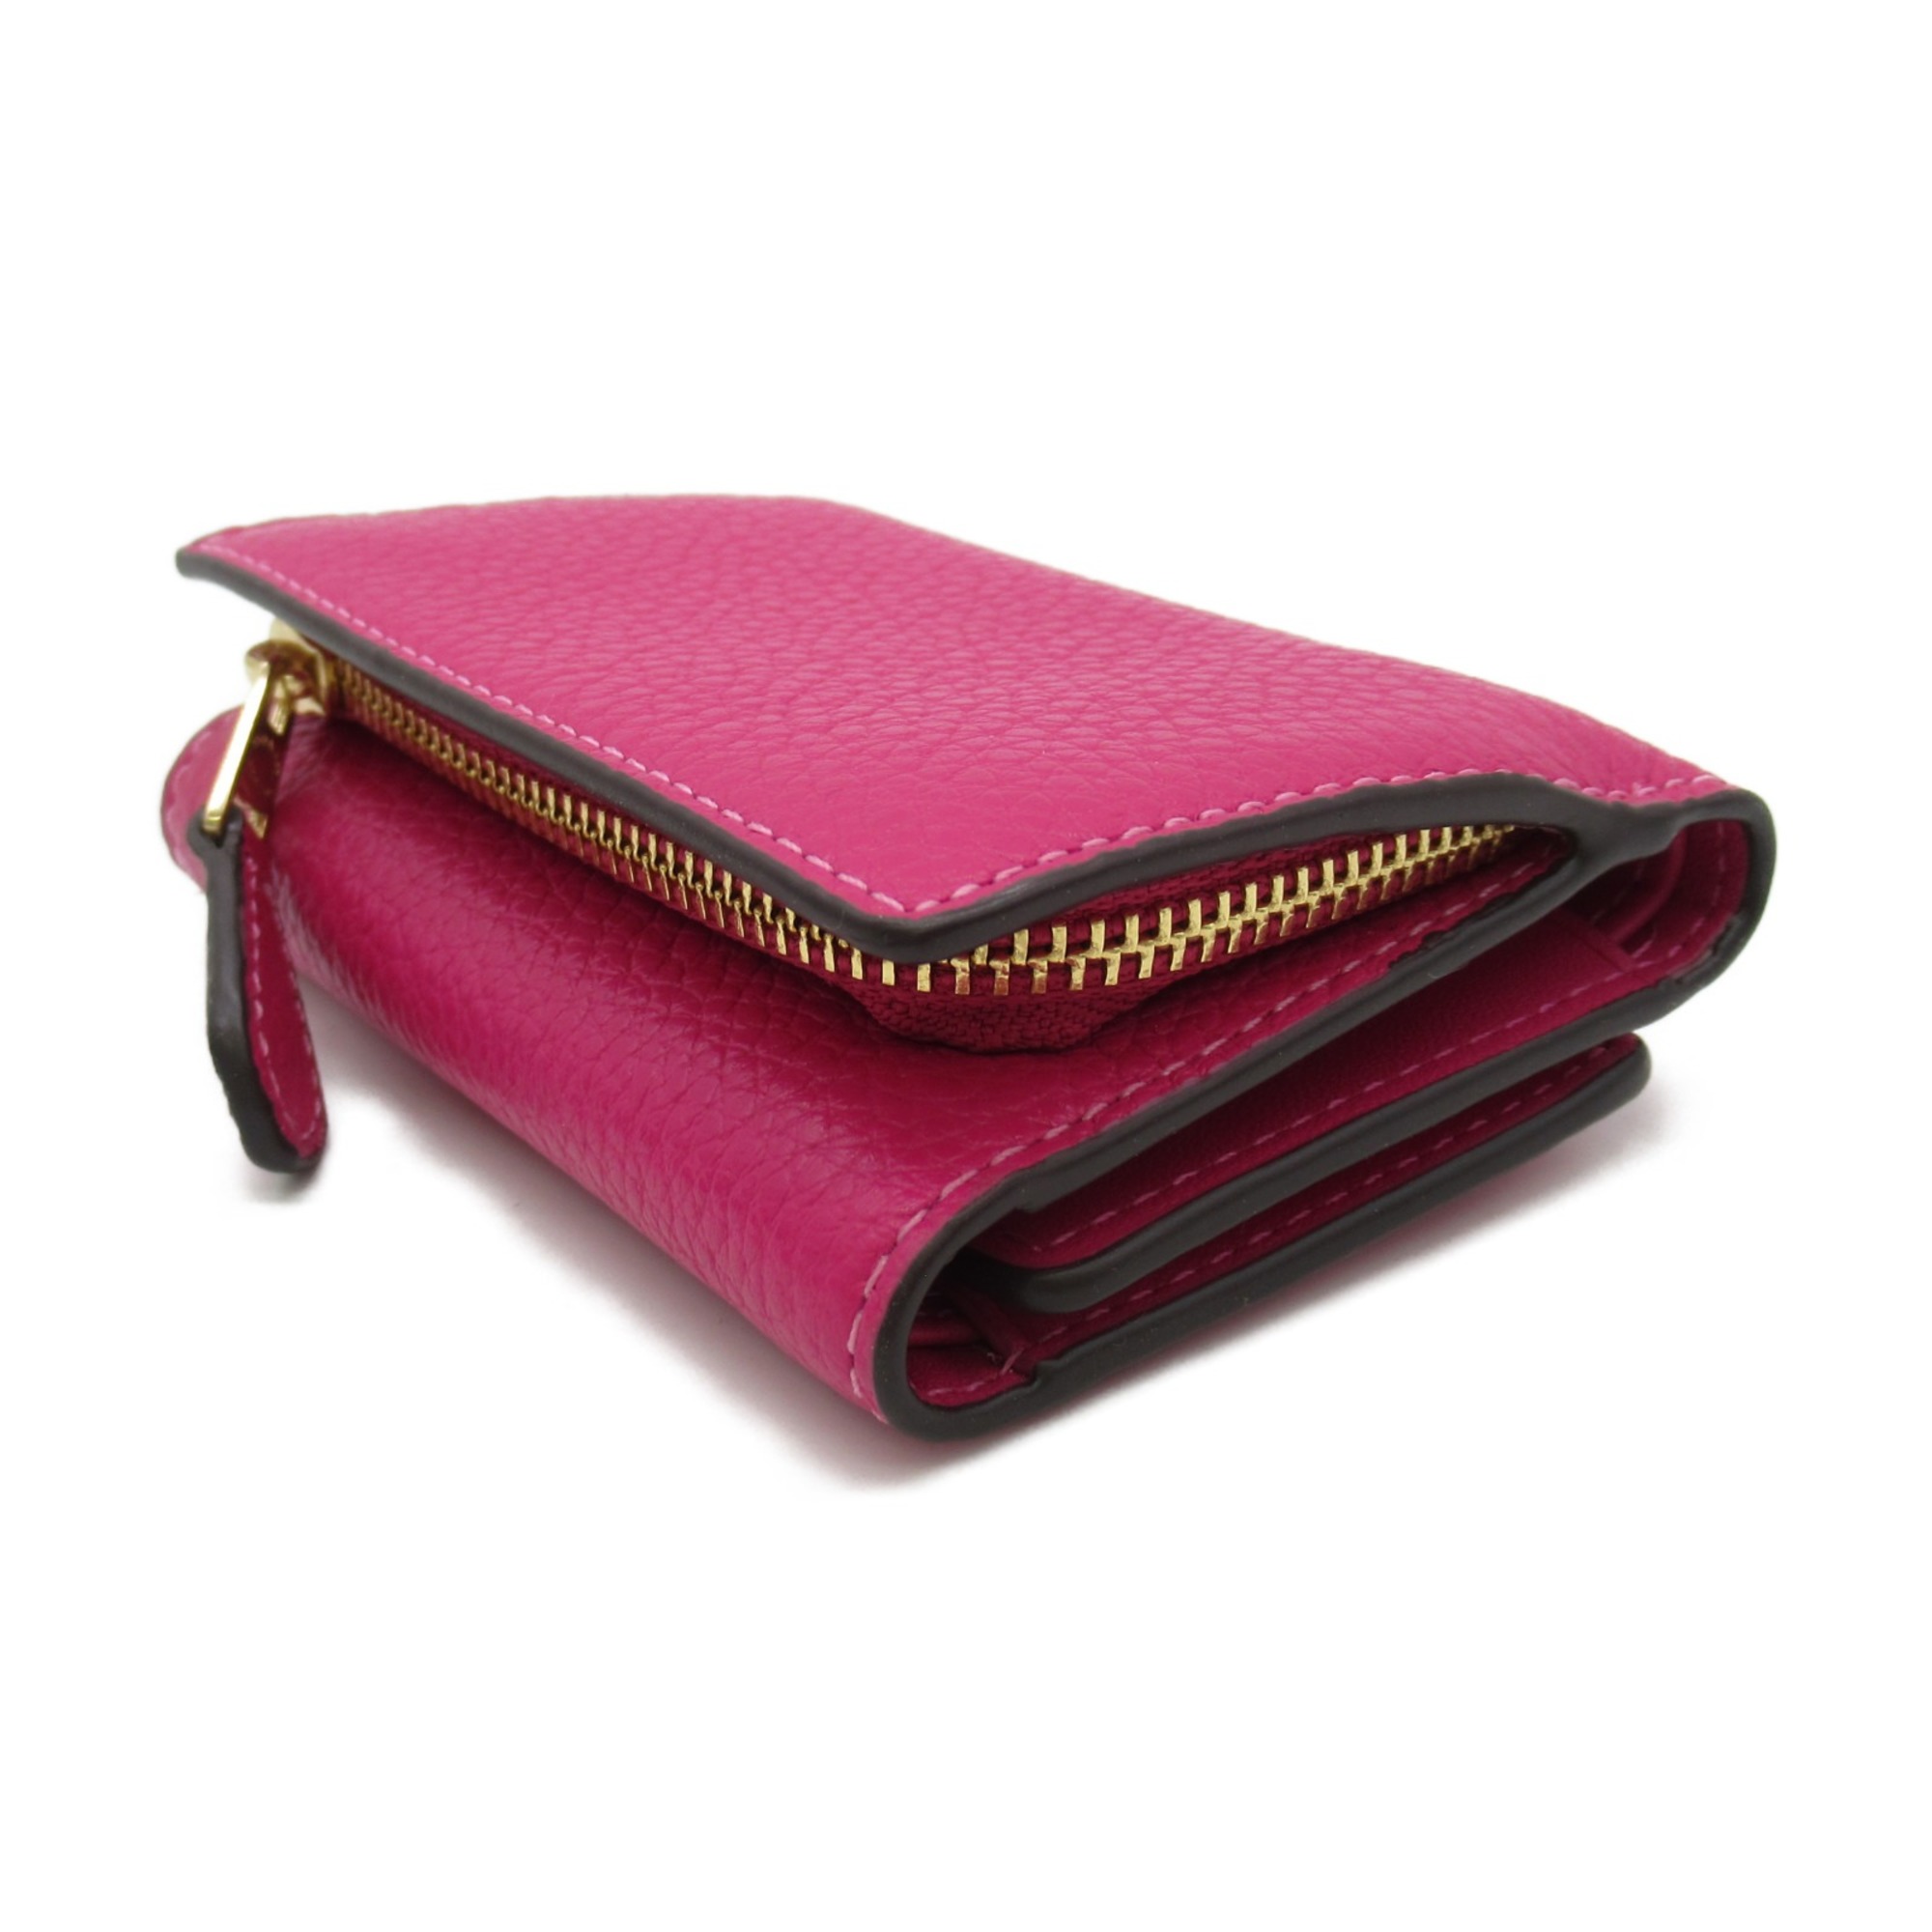 COACH Tri-fold wallet Pink leather CM238IMAJN